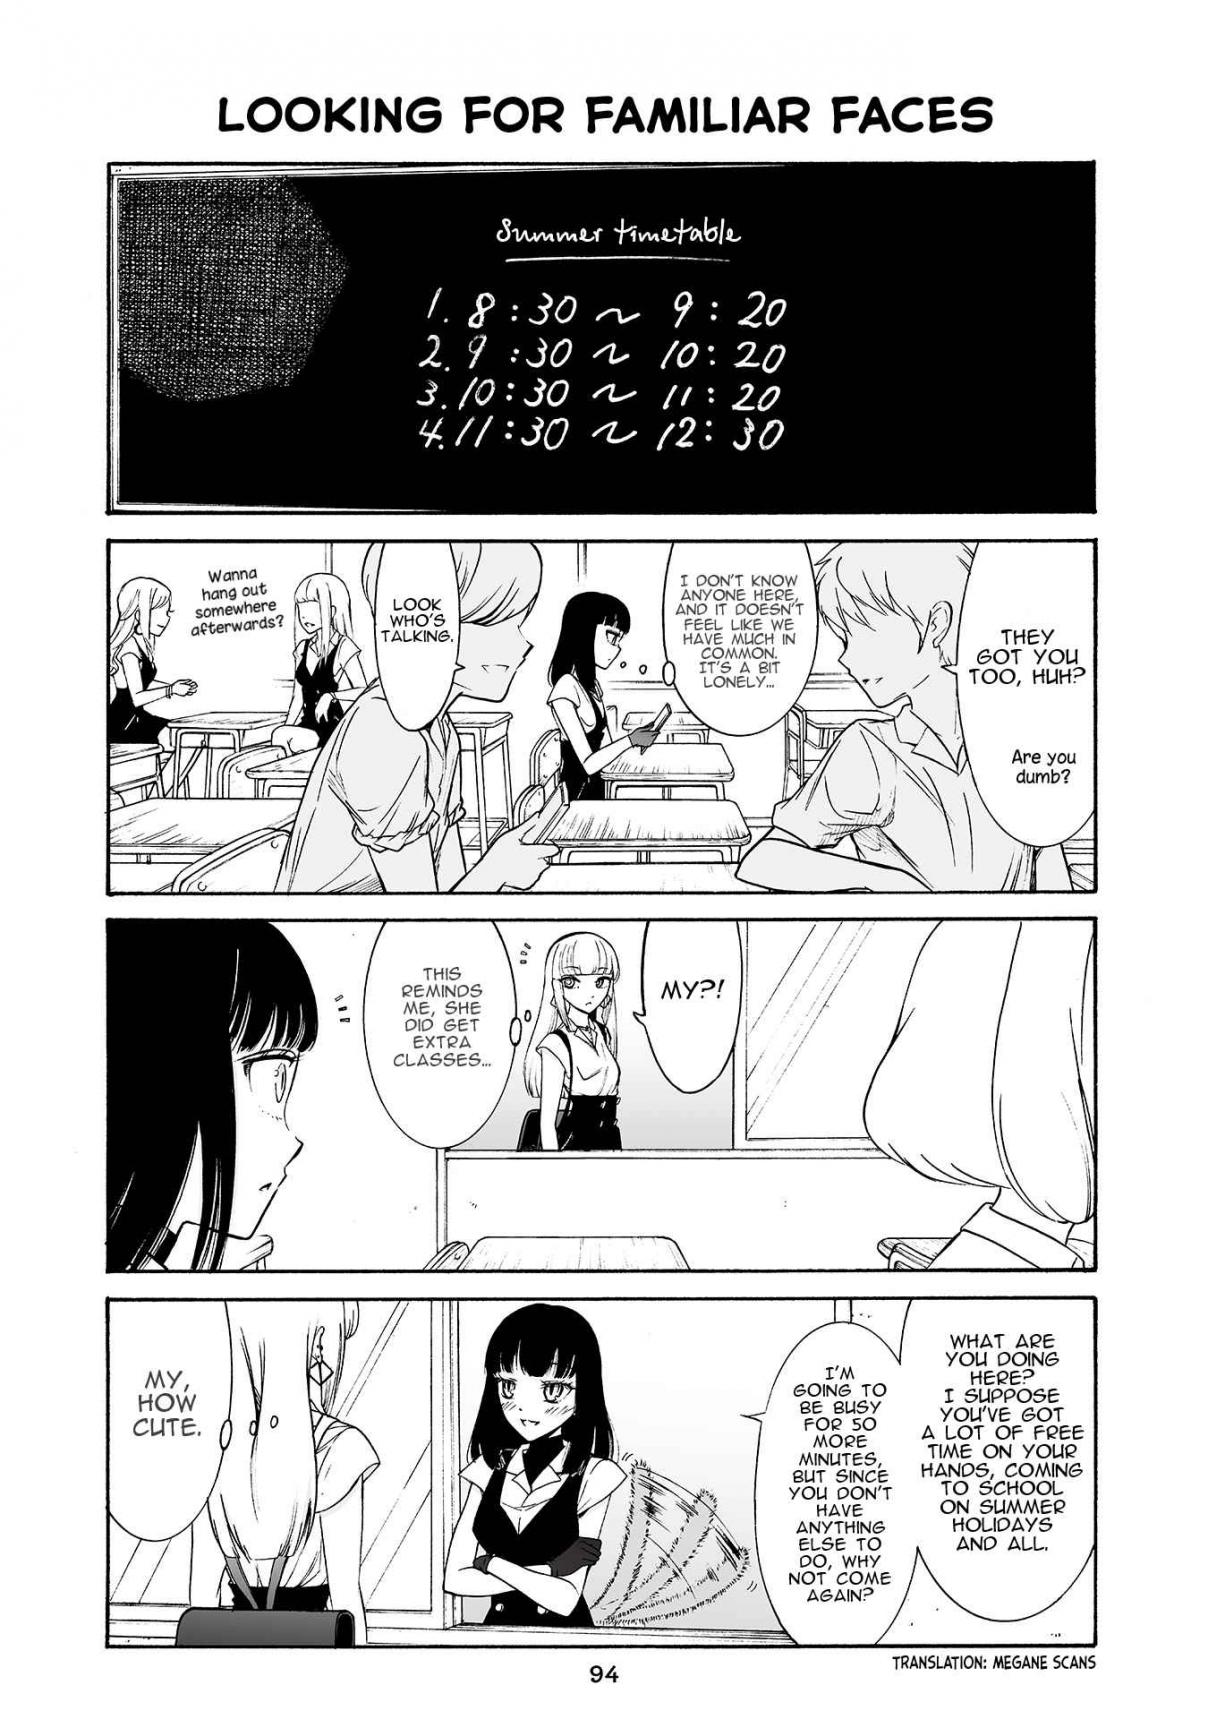 Kuzu to Megane to Bungaku Shoujo (Nise) Vol. 2 Ch. 175 Looking for familiar faces